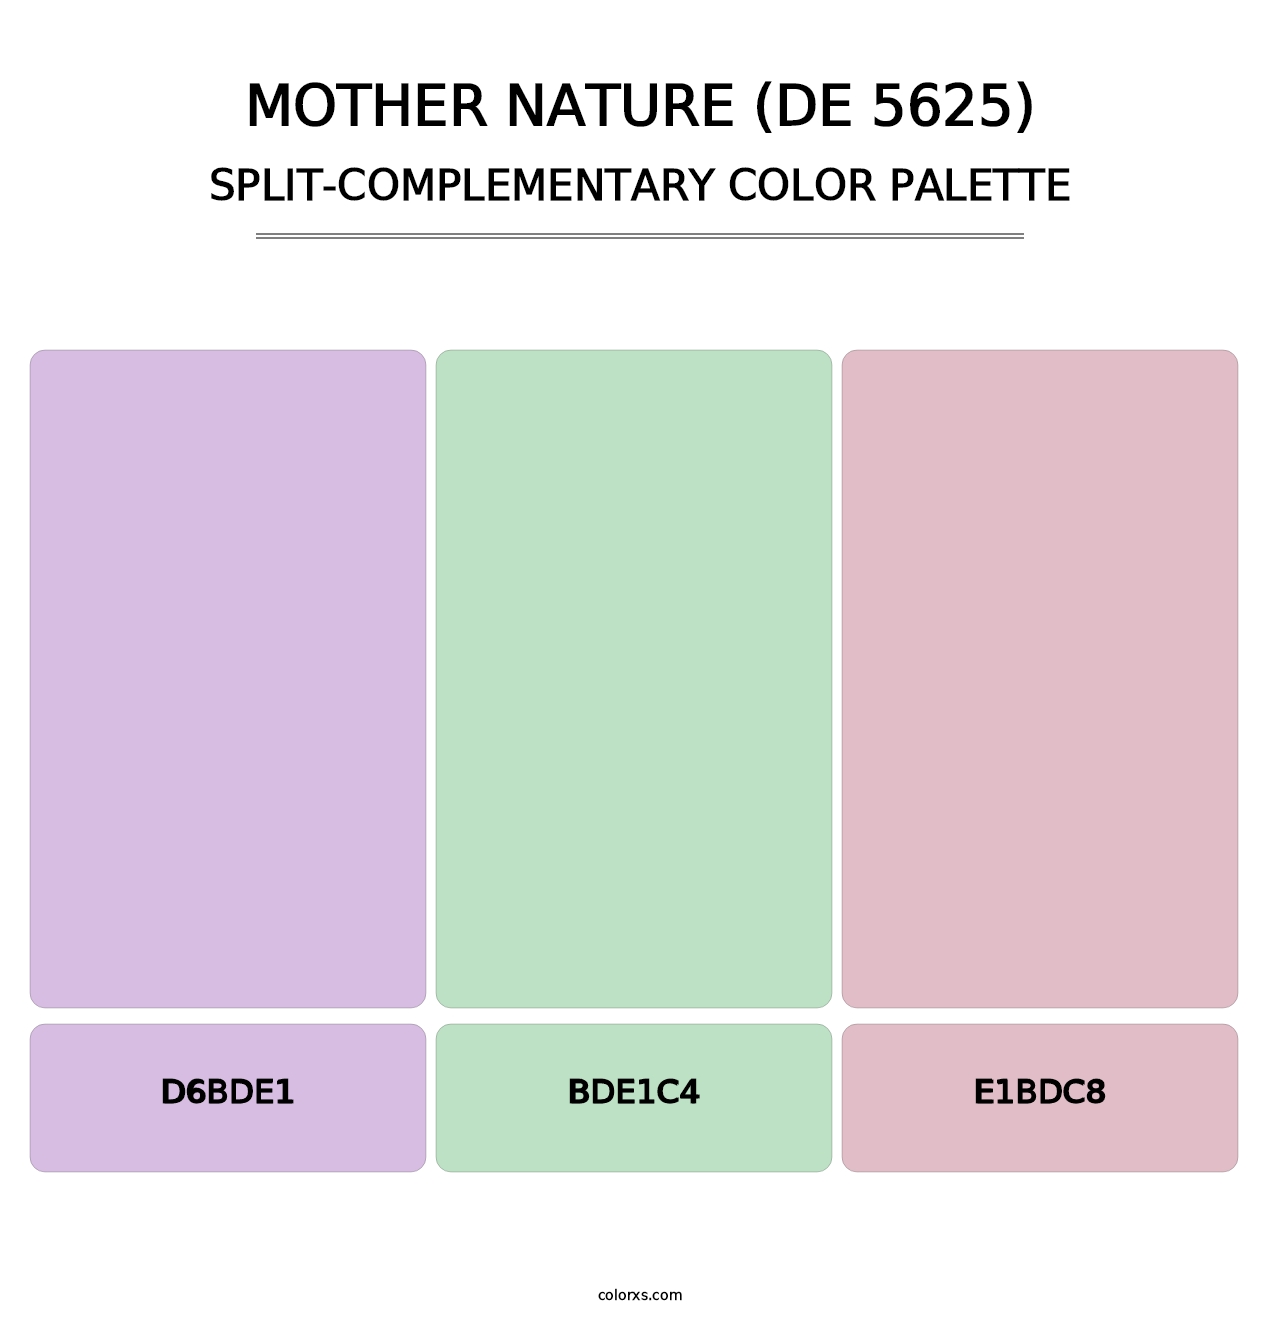 Mother Nature (DE 5625) - Split-Complementary Color Palette